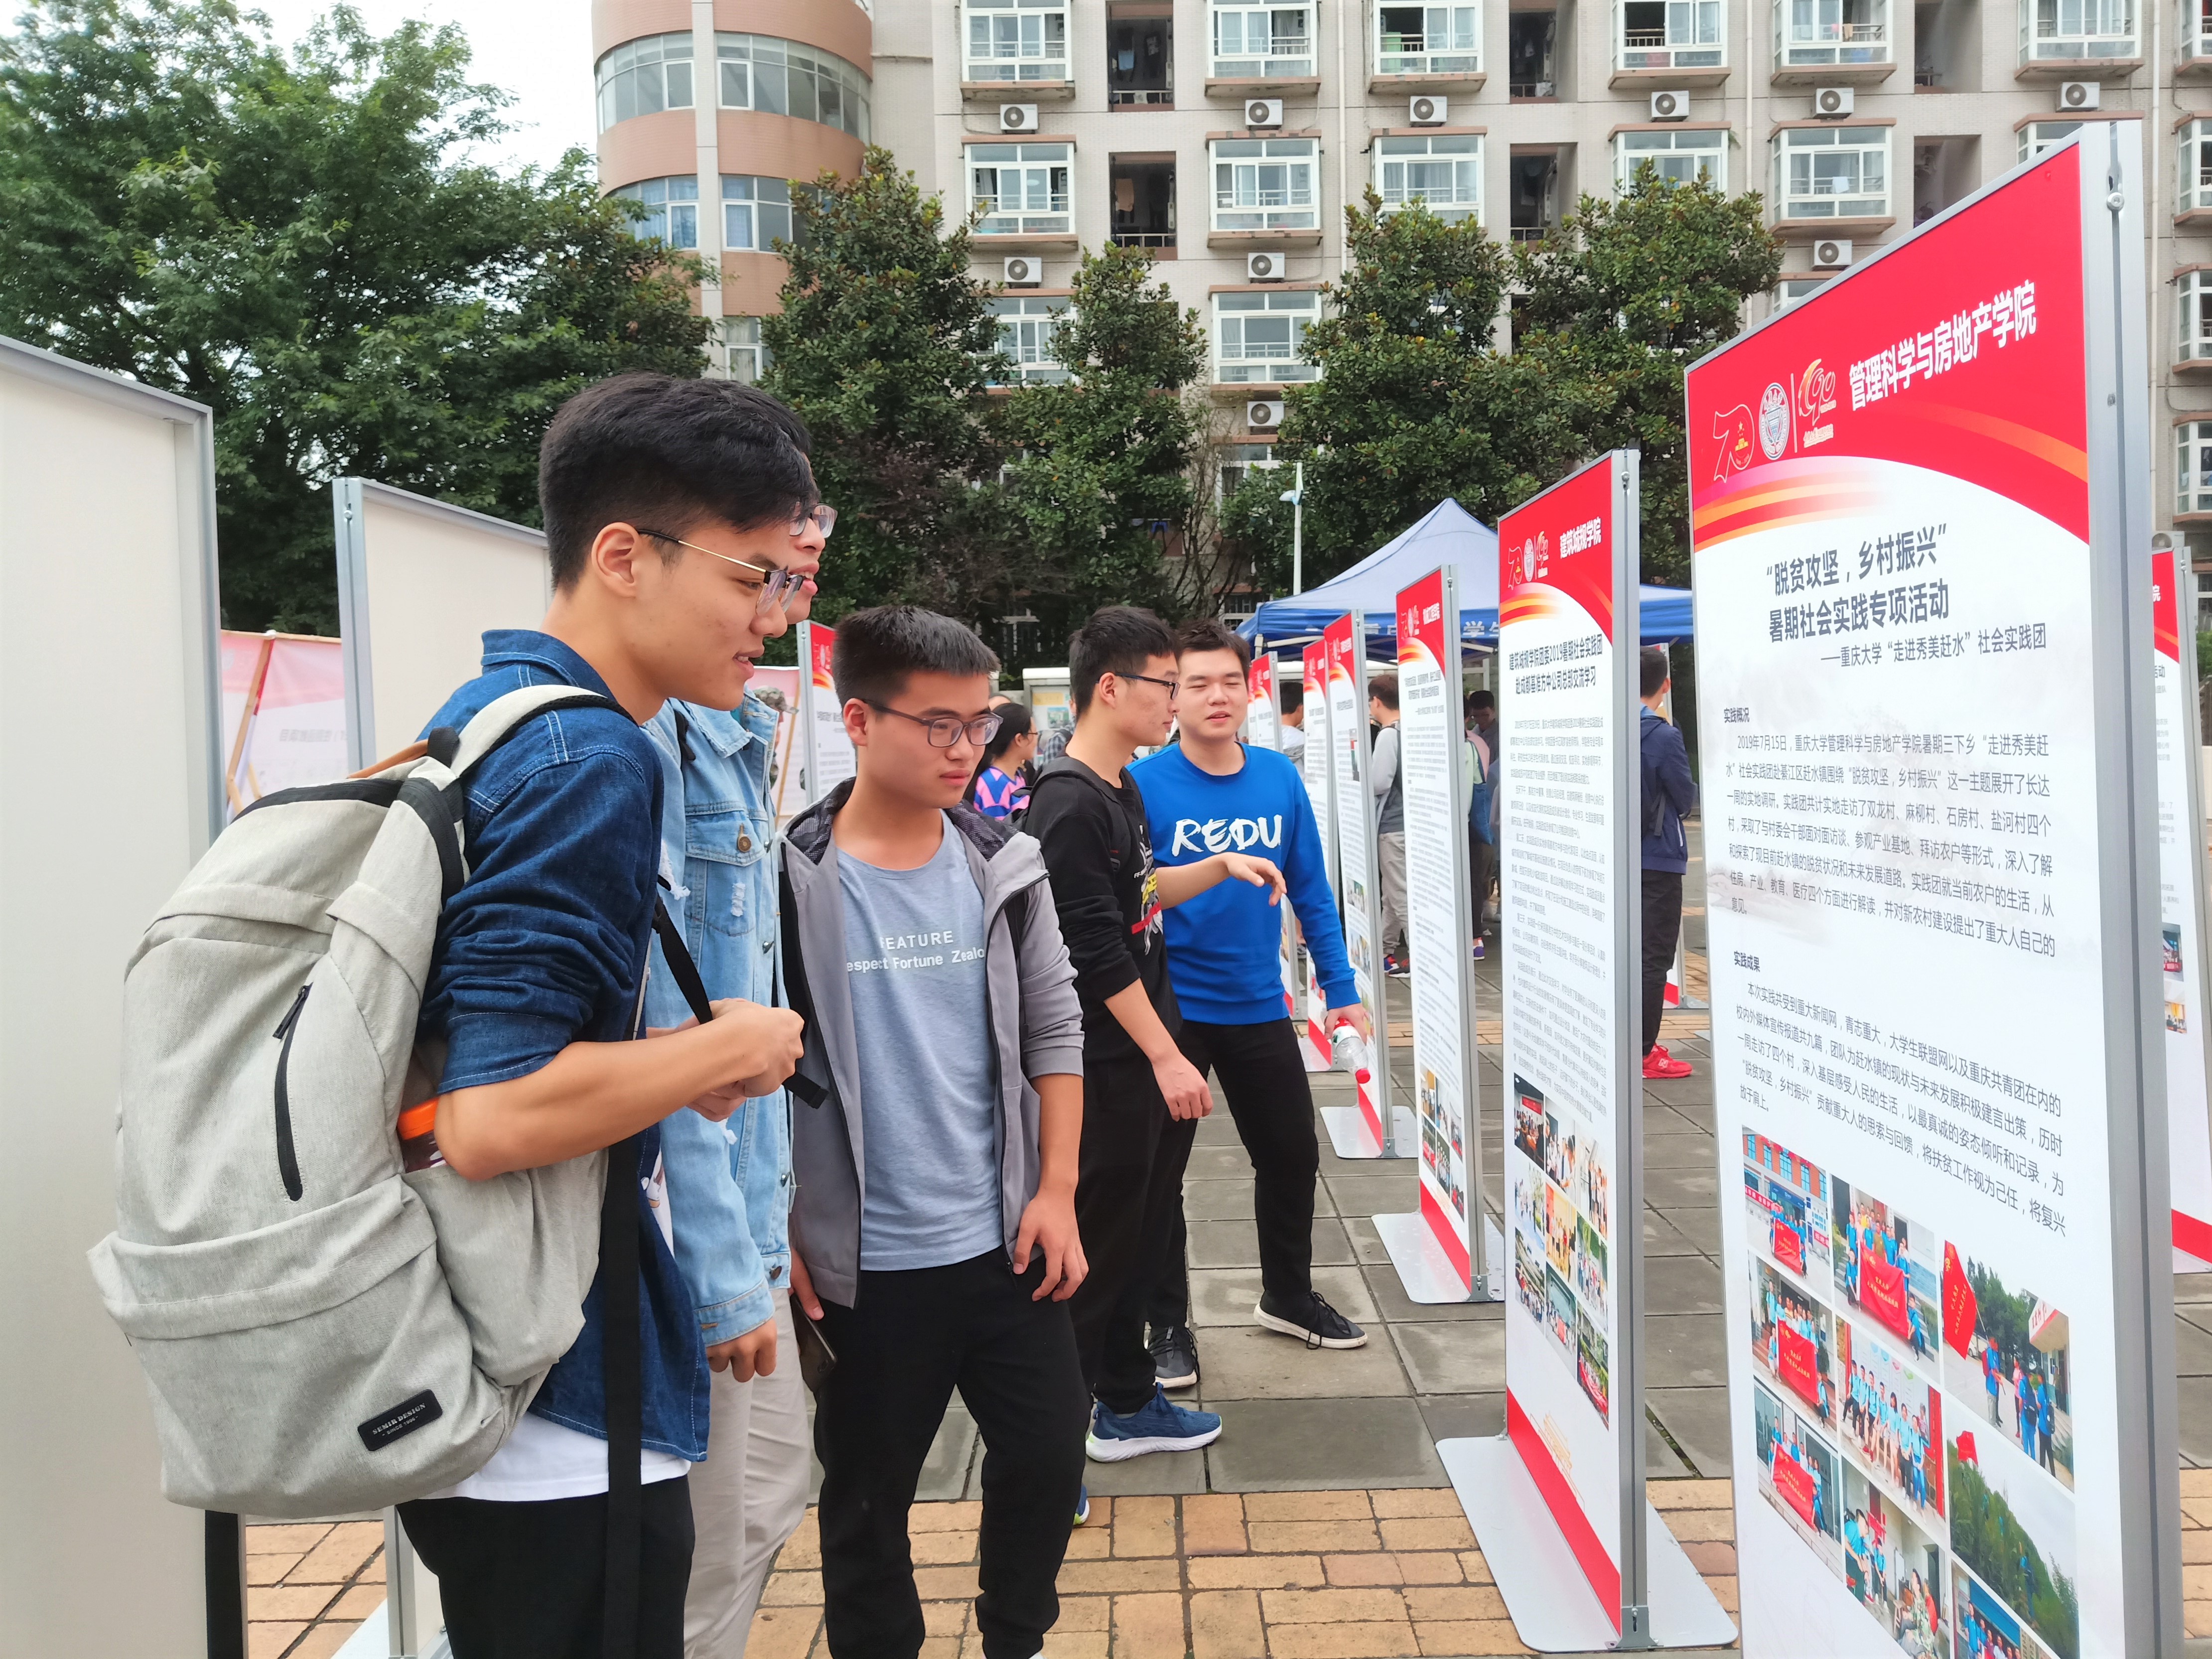 2019年重庆大学暑期社会实践成果展异彩纷呈